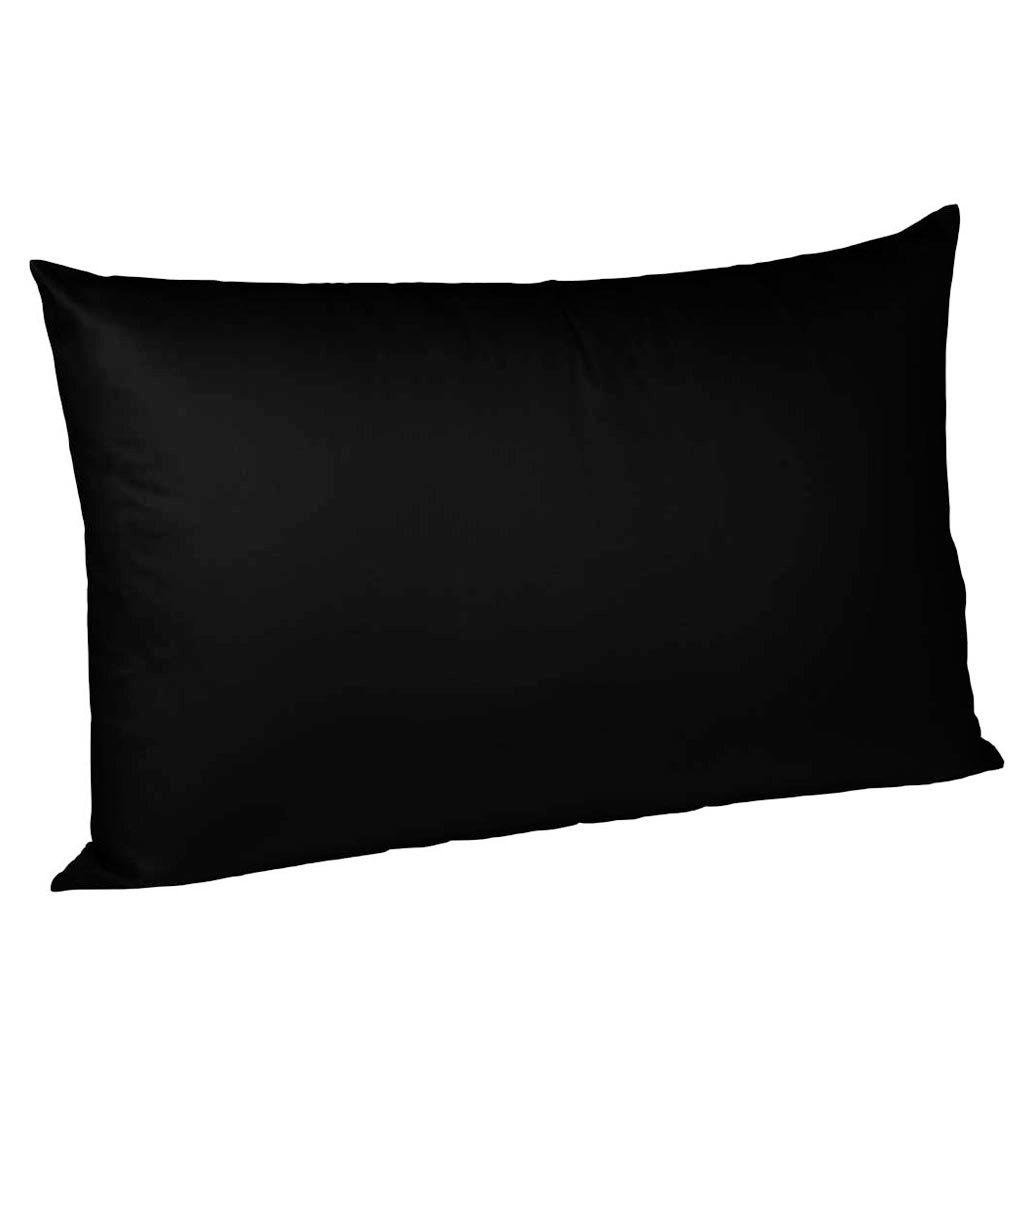 ČALÚNENÝ POŤAH, 40/40 cm, bavlna - čierna, Basics, textil (40/40cm) - Fleuresse